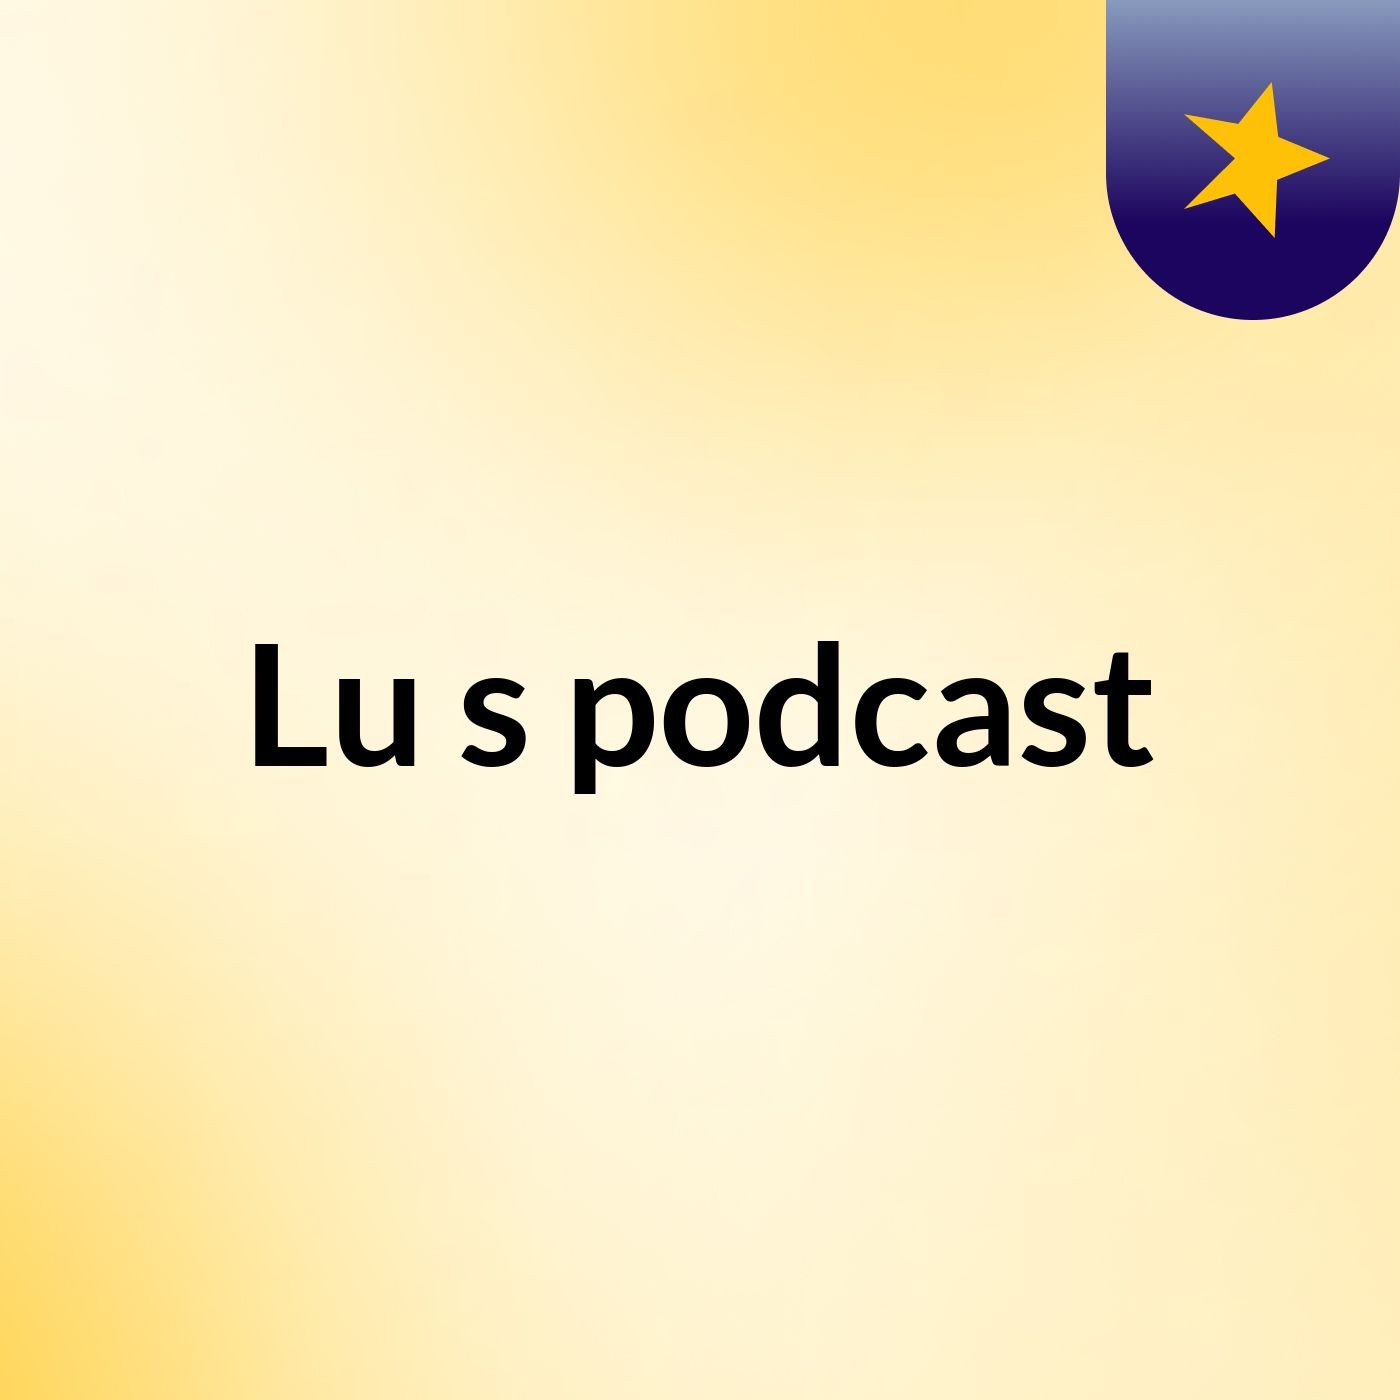 Lu's podcast